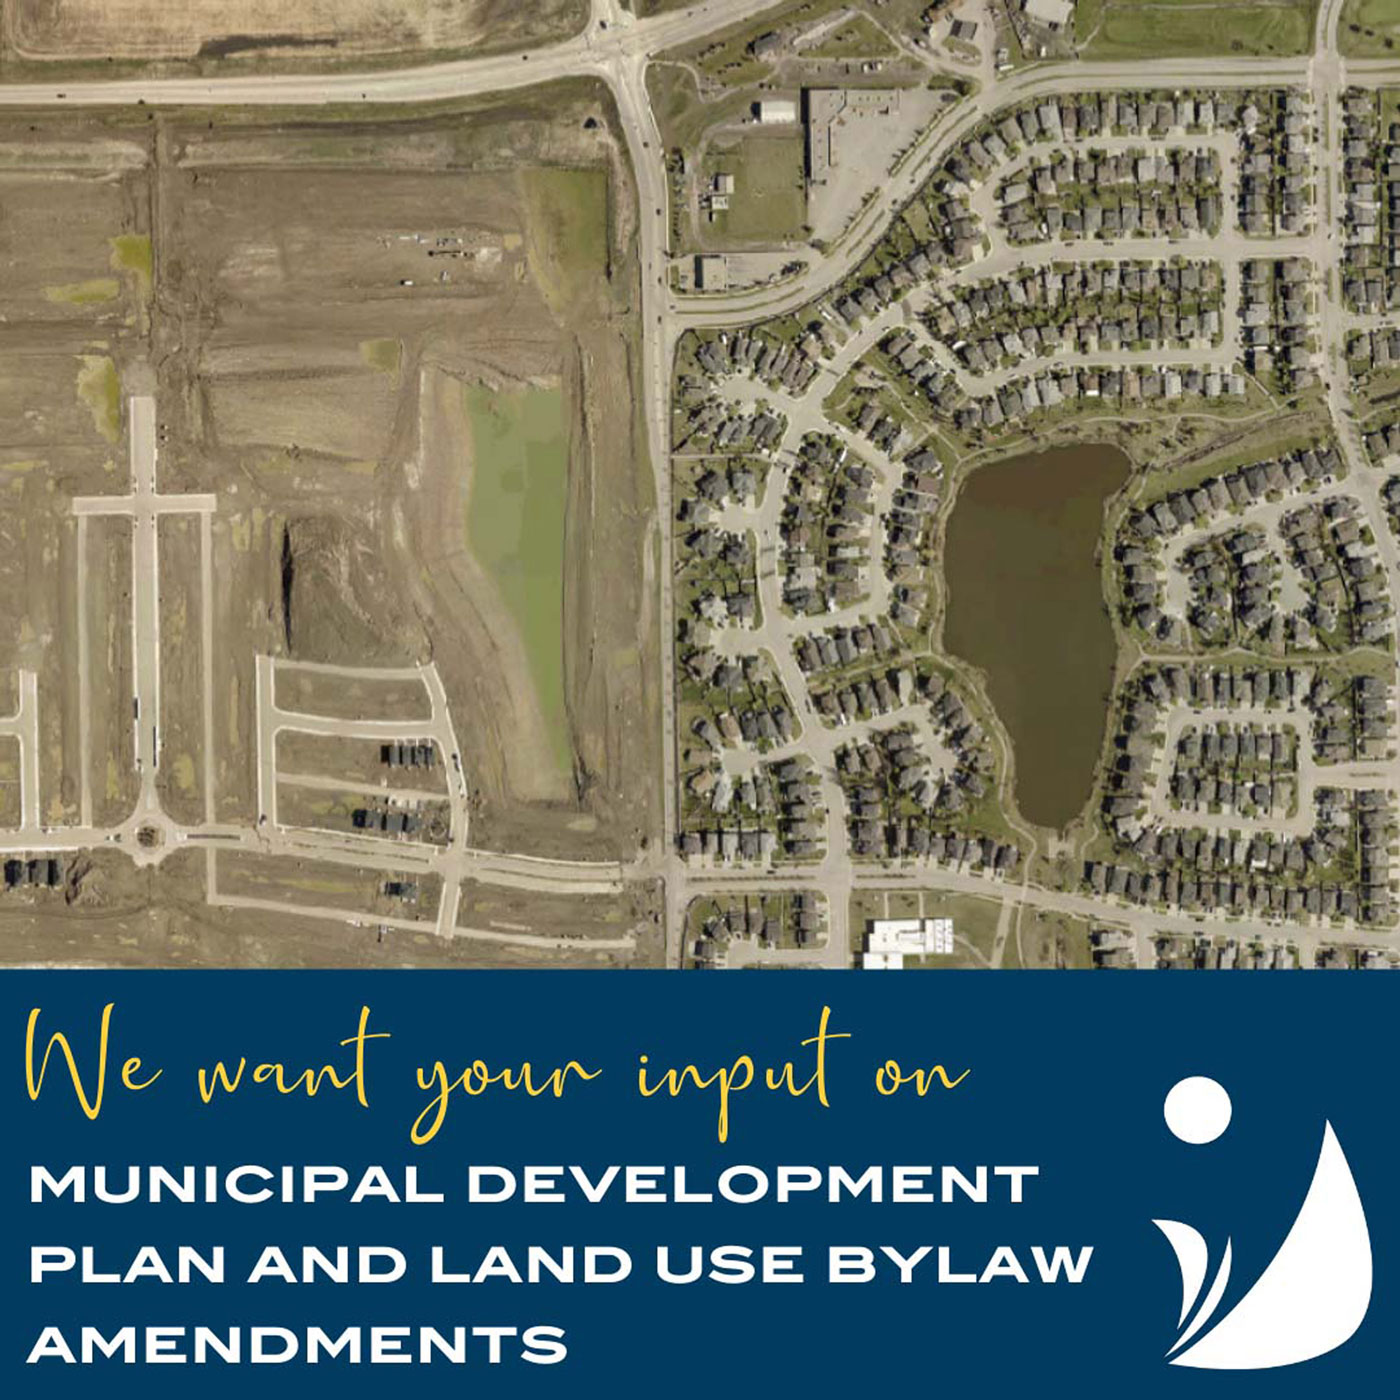 Council-seeking-community-input-on-Municipal-Development-Plan-and-Land-Use-Bylaw-amendments-pic-1